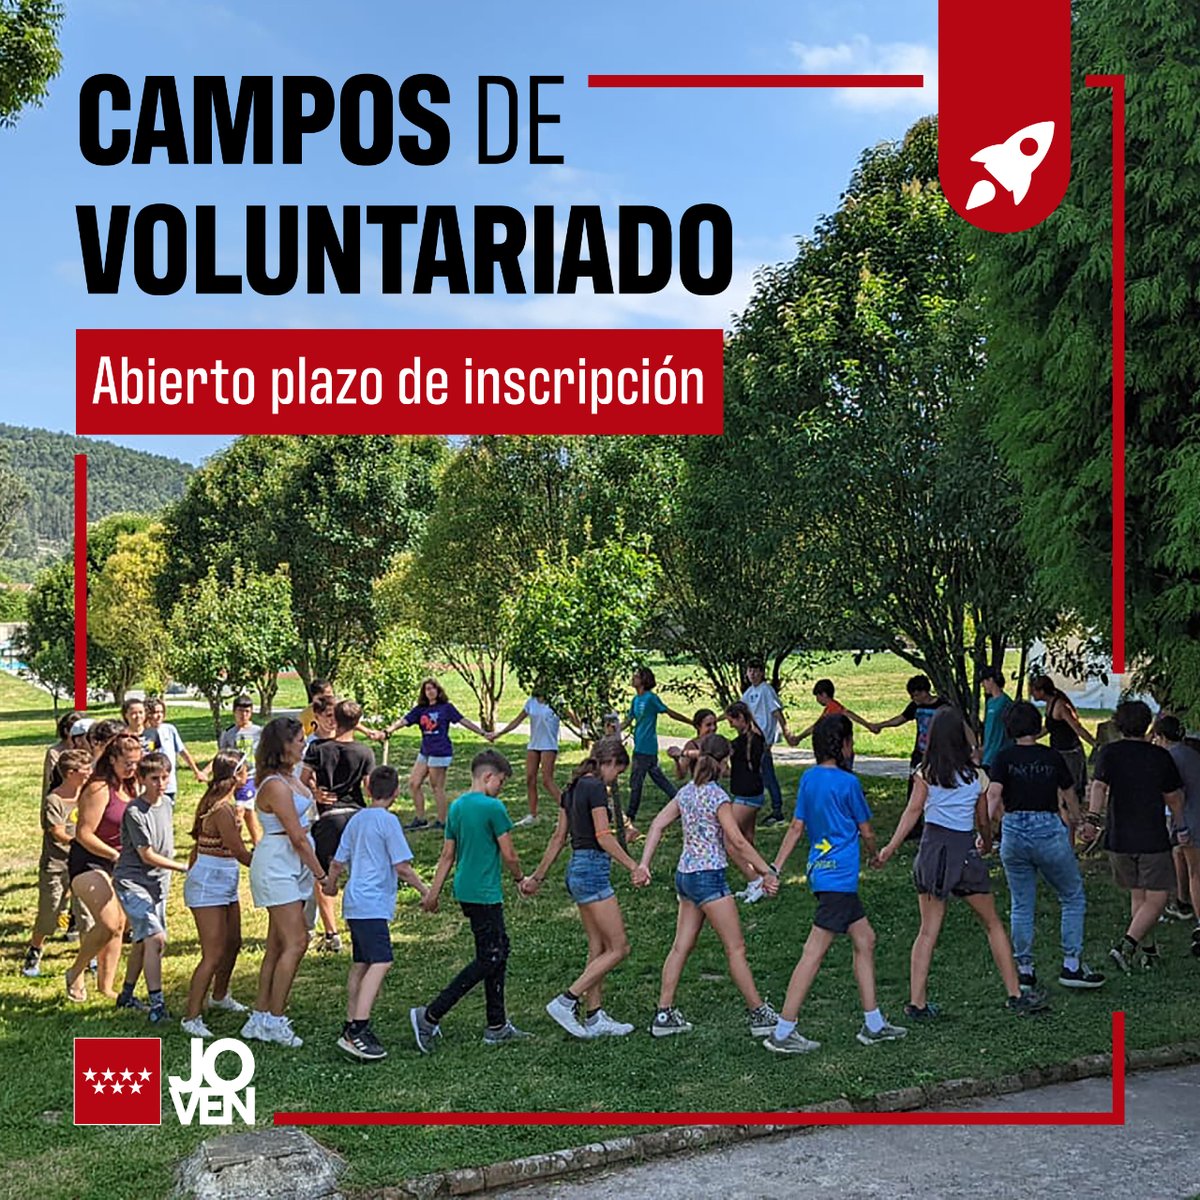 🟡 Hoy se abre el plazo de inscripción a los campos de voluntariado en España, también hay de modalidad internacional. ¡Apúntate para vivir una experiencia diferente este verano y conocer a jóvenes de otros países! ℹ️ bit.ly/3YxMbKt #Juventud @ComunidadMadrid